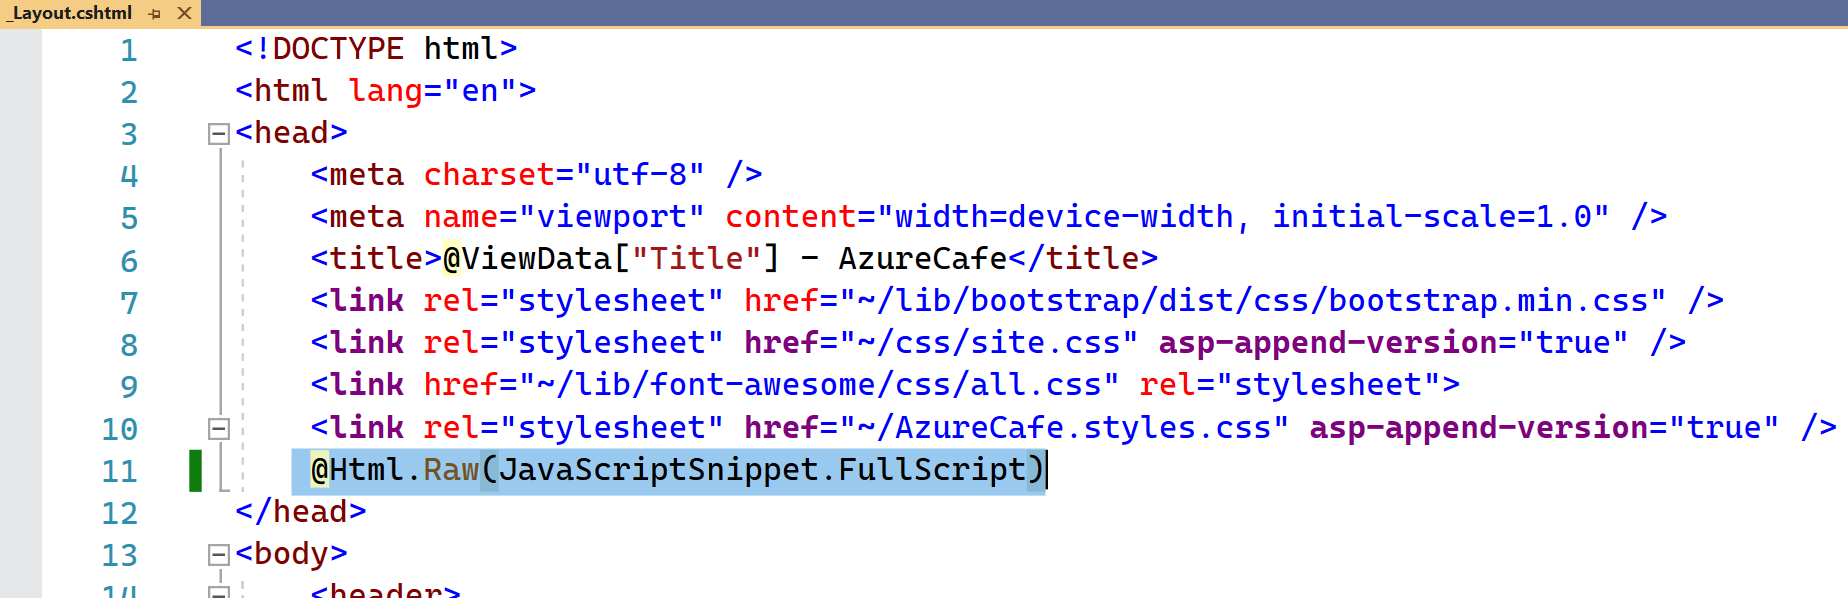 显示 _Layout.cshtml 文件，其中在页面的标题部分中突出显示了前一行代码。